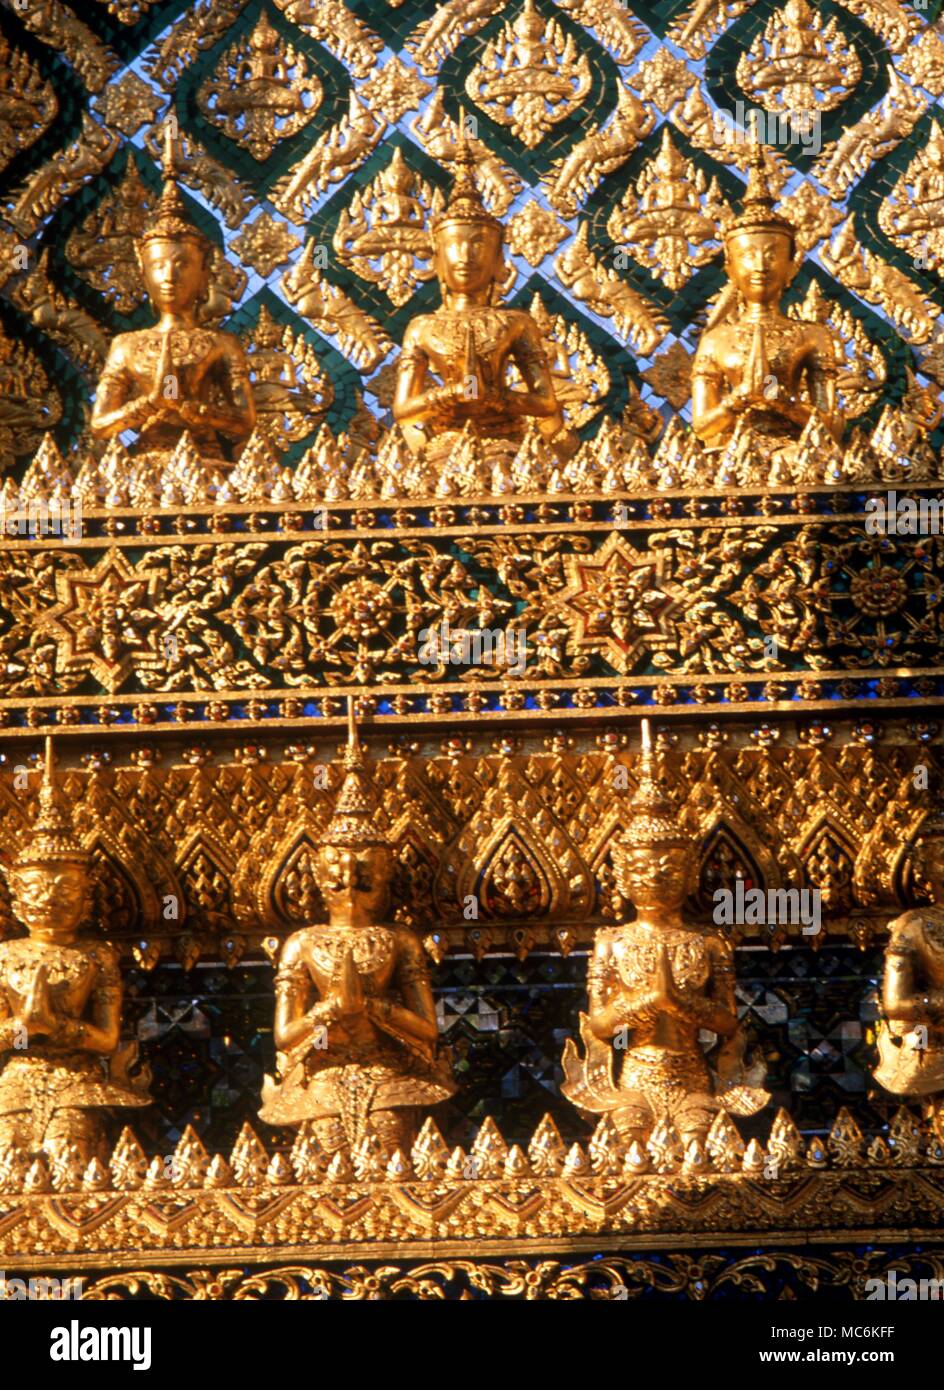 El budismo Registros de Budas de oro sobre la fachada exterior de uno de los templos en el gran complejo de palacio Bangkok Thailand Foto de stock